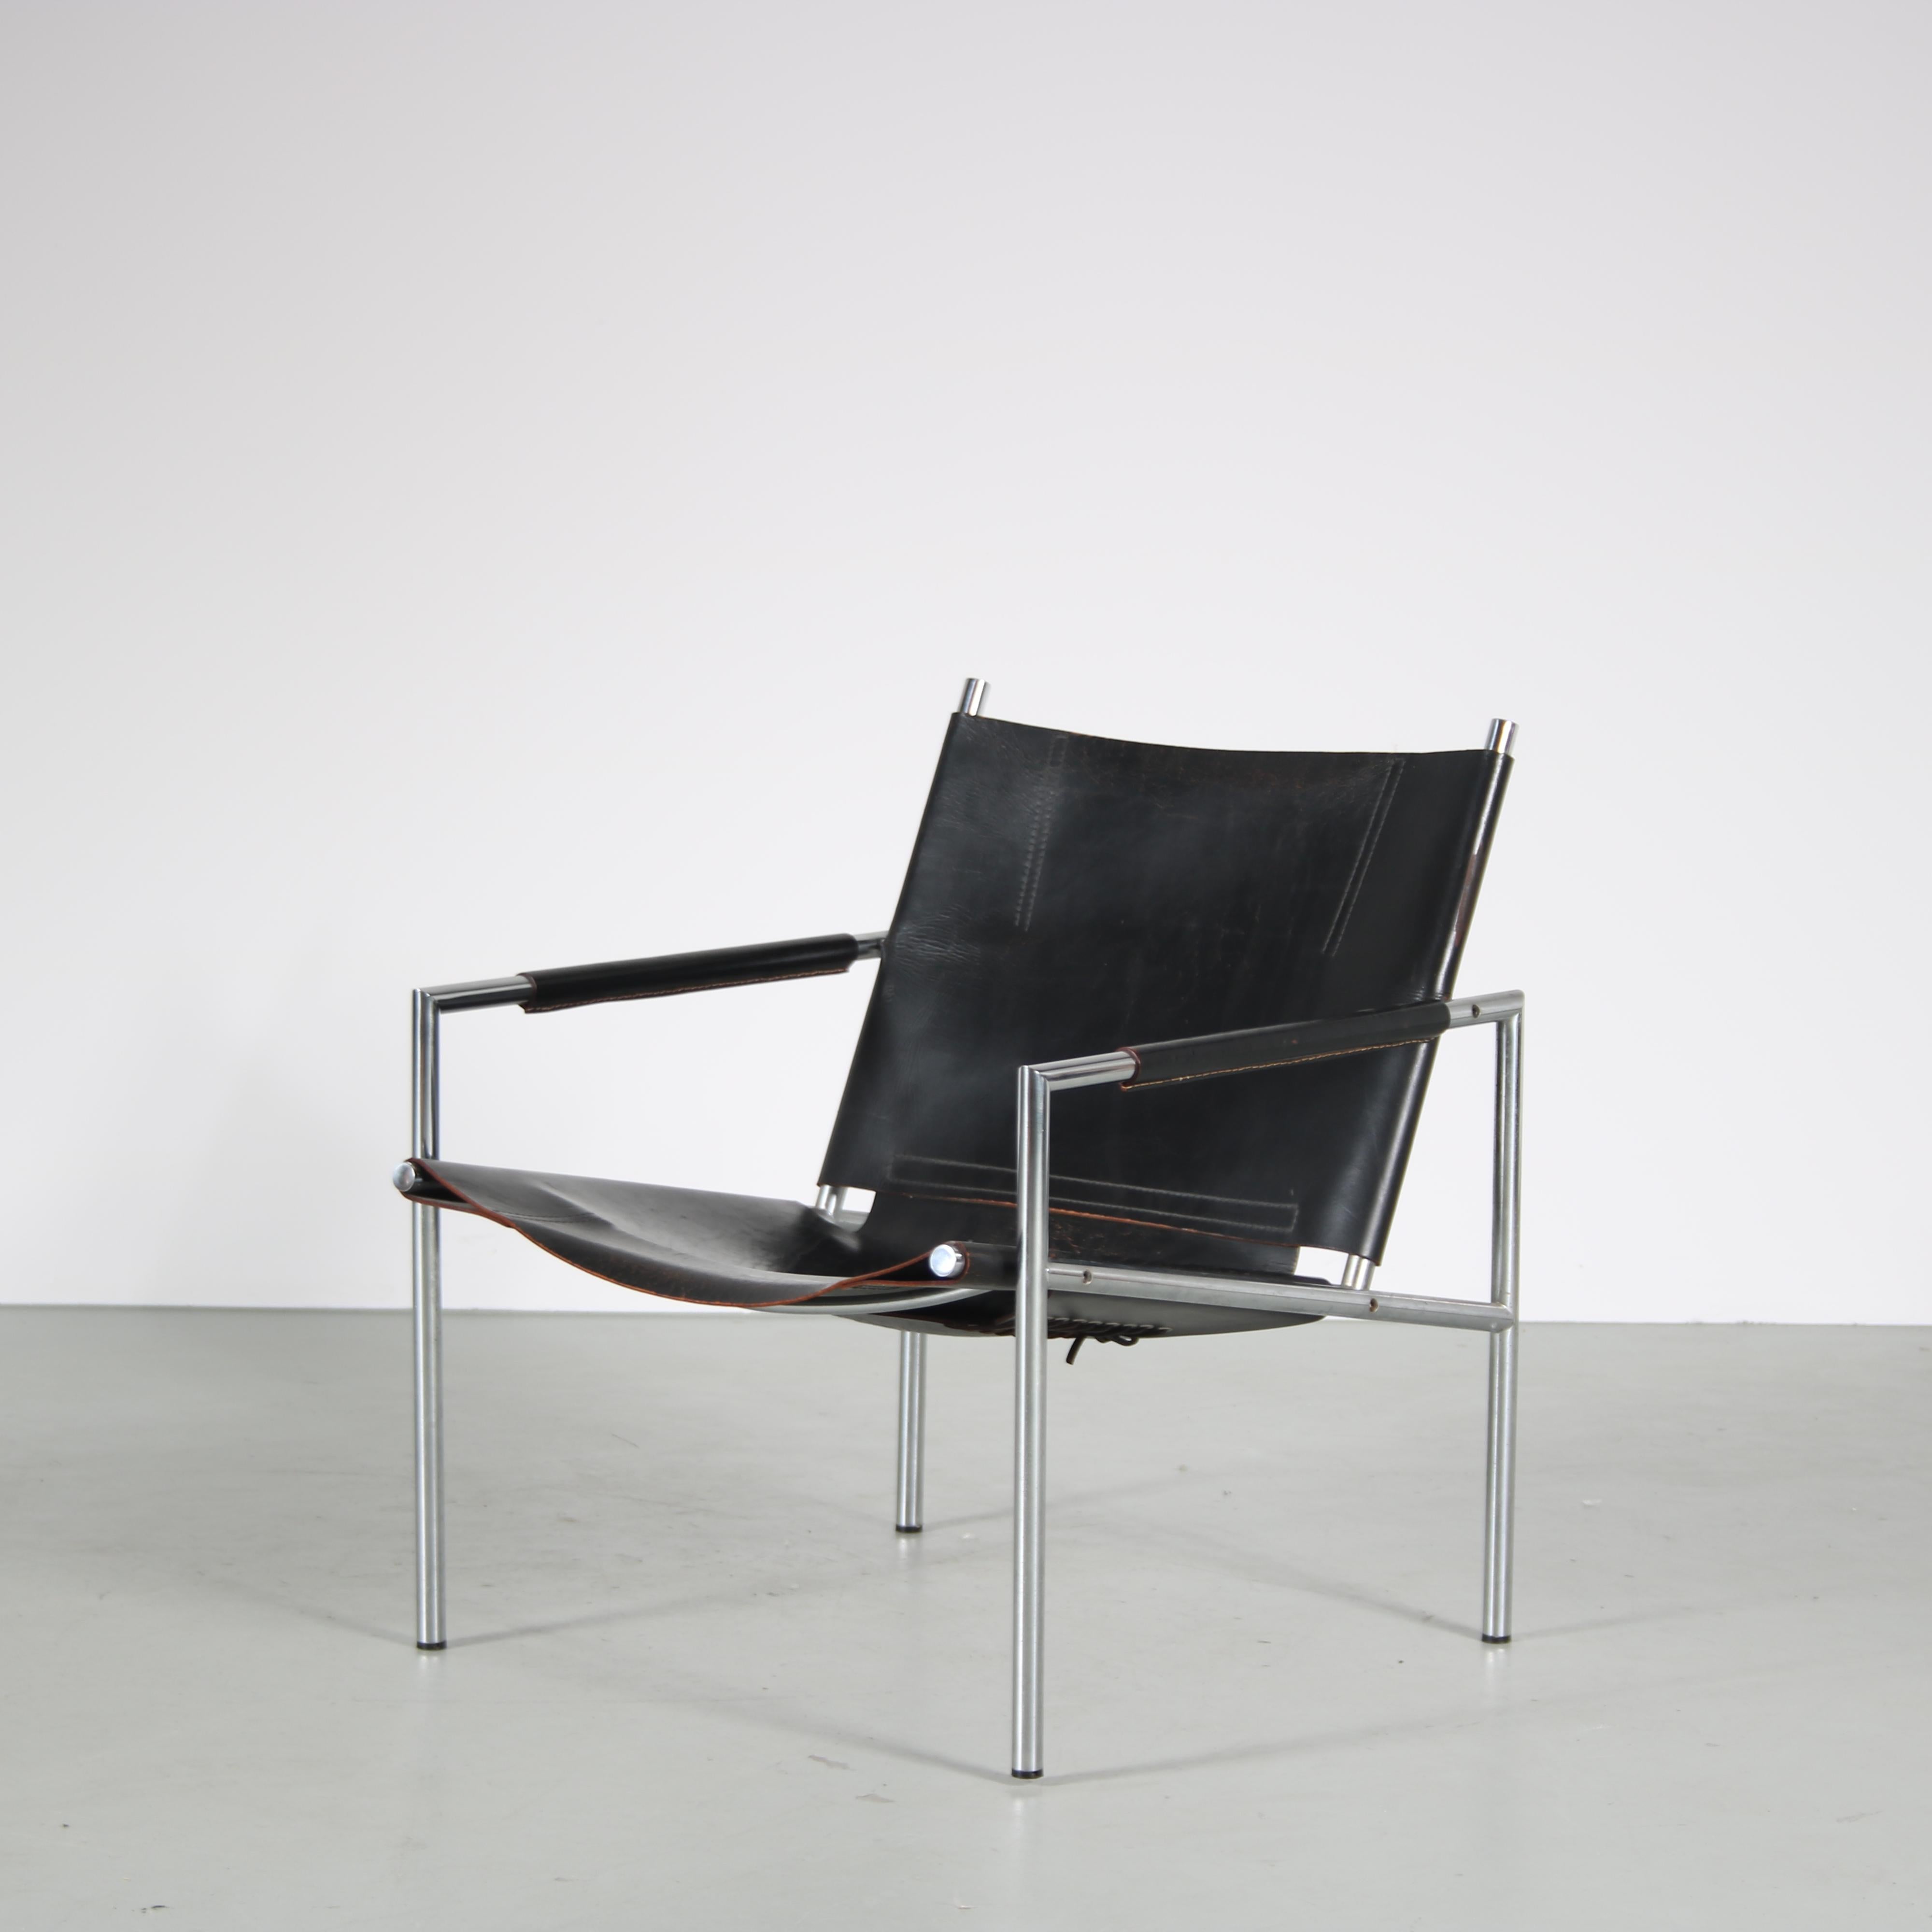 Ein schöner Loungesessel, der um 1960 in Deutschland hergestellt wurde.

Dieser moderne Stuhl hat ein Gestell aus rostfreiem Stahlrohr. Die Sitzfläche und die Rückenlehne sind aus dickem, schwarzem Nackenleder gefertigt und hängen im Rahmen. Dazu